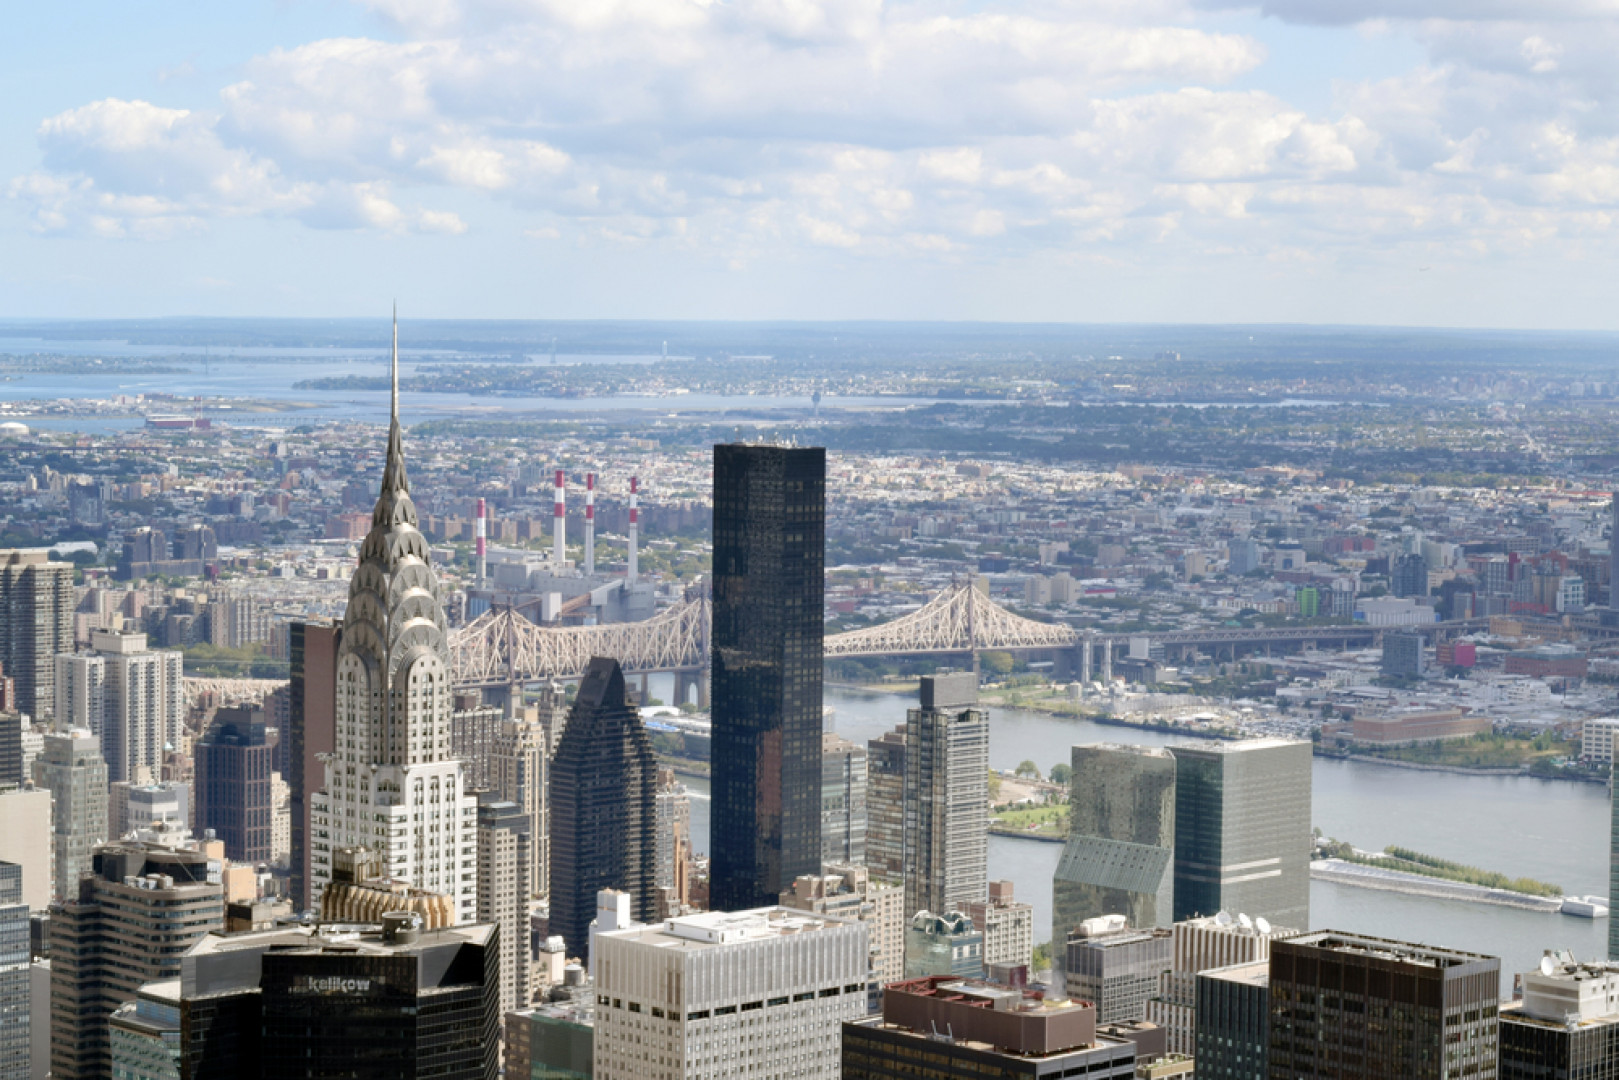 262-metrowy luksusowy apartamentowiec World Trump Tower to jeden z najwyższych budynków mieszkalnych na świecie. Obiekt zaprojektowany przez Costasa Kondylisa wzbudził niemałe kontrowersje - przewyższył sąsiadującą z nim kwaterę główną ONZ, co złamało powszechną niepisaną umowę o budowaniu niżej niż siedziba Organizacji, fot. shutterstock